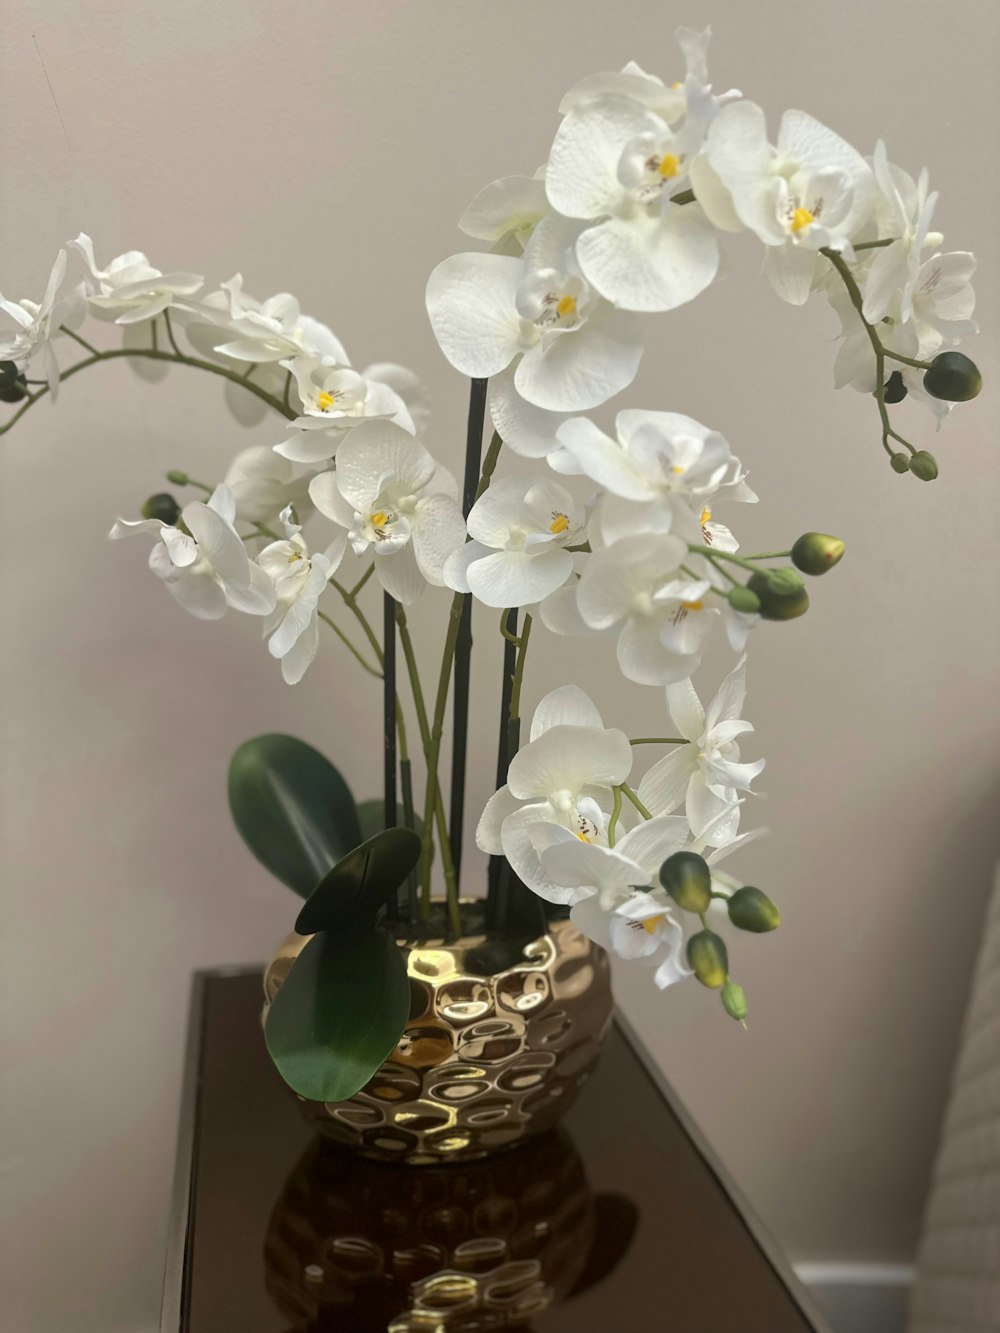 テーブルの上に白い花が咲き乱れる花瓶